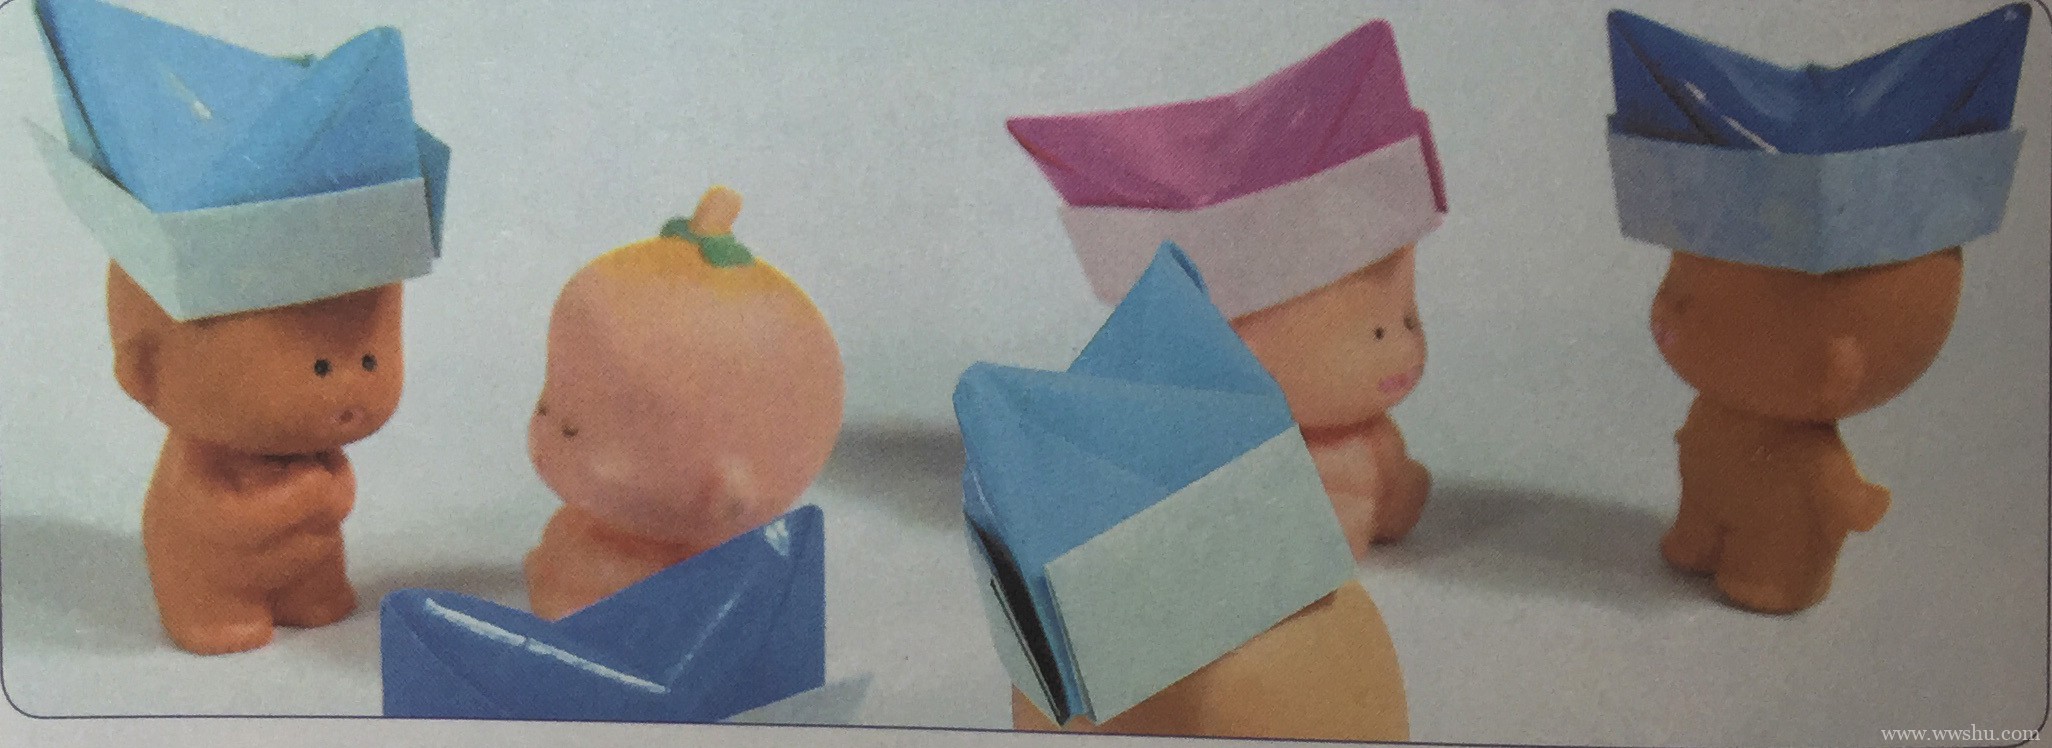 船形帽折纸 如何用纸折帽子